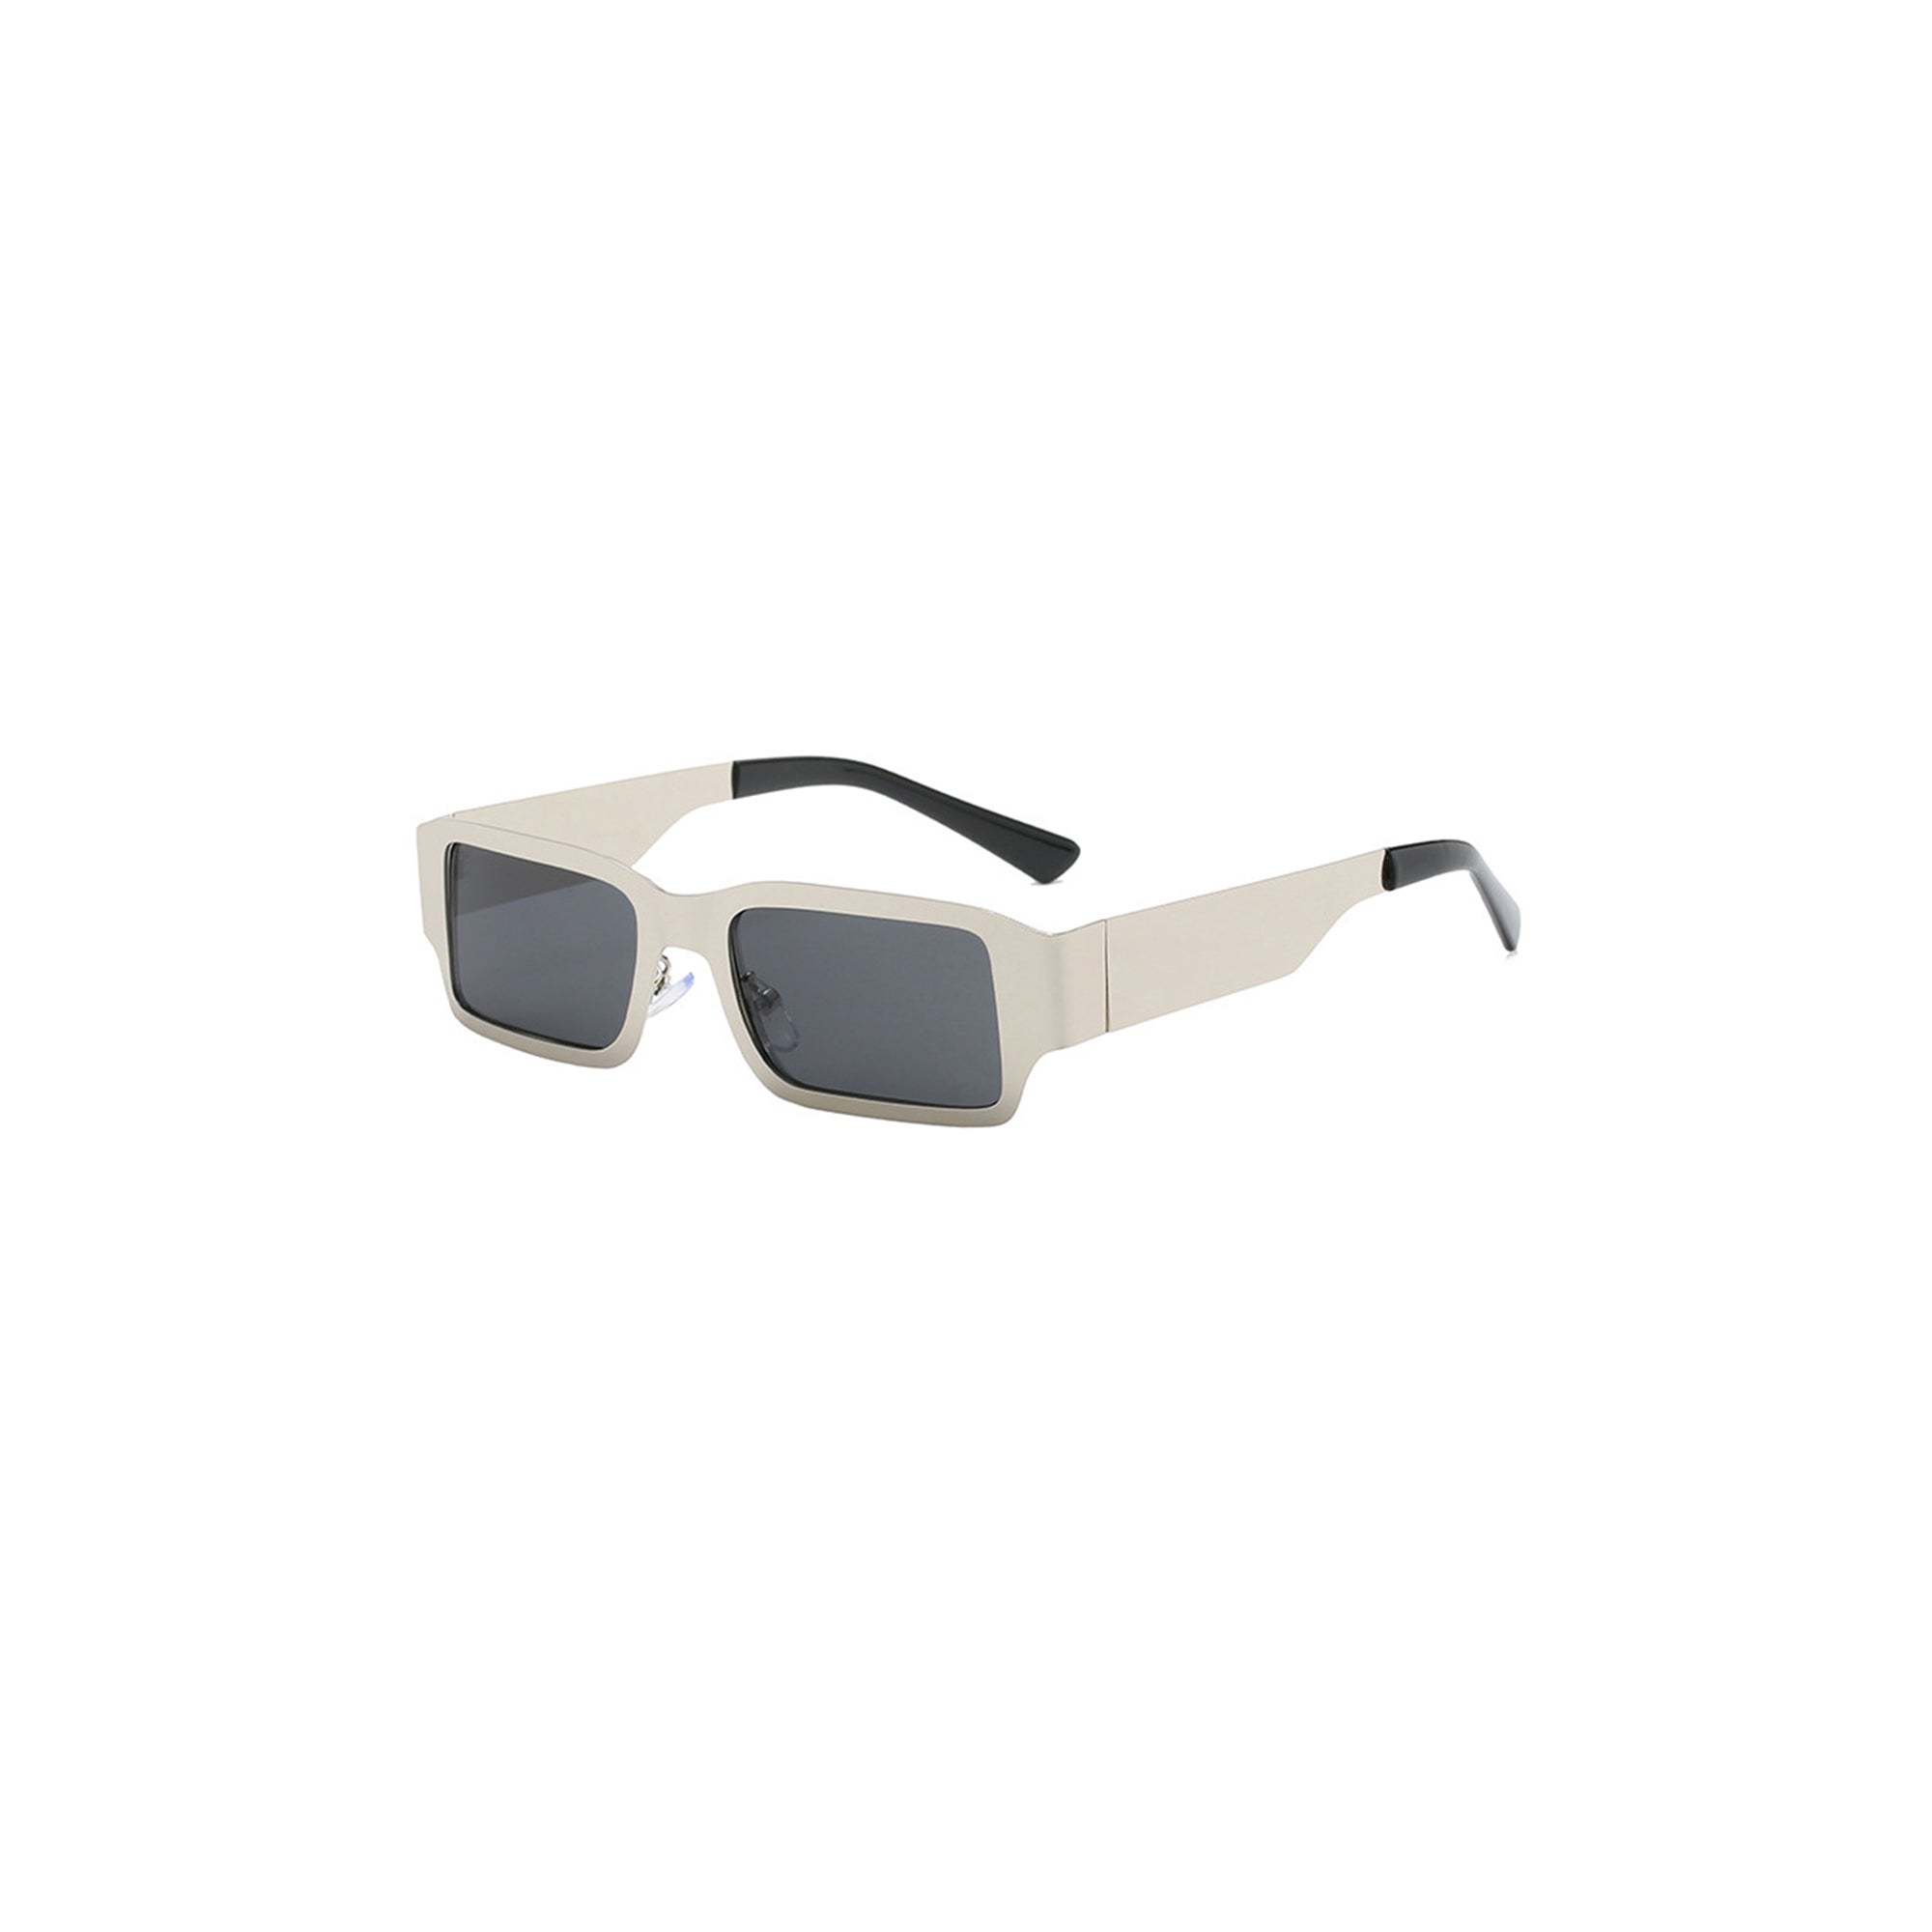 DAMAGE ASIA OPTICALS Metallic Square Frame Sunglasses